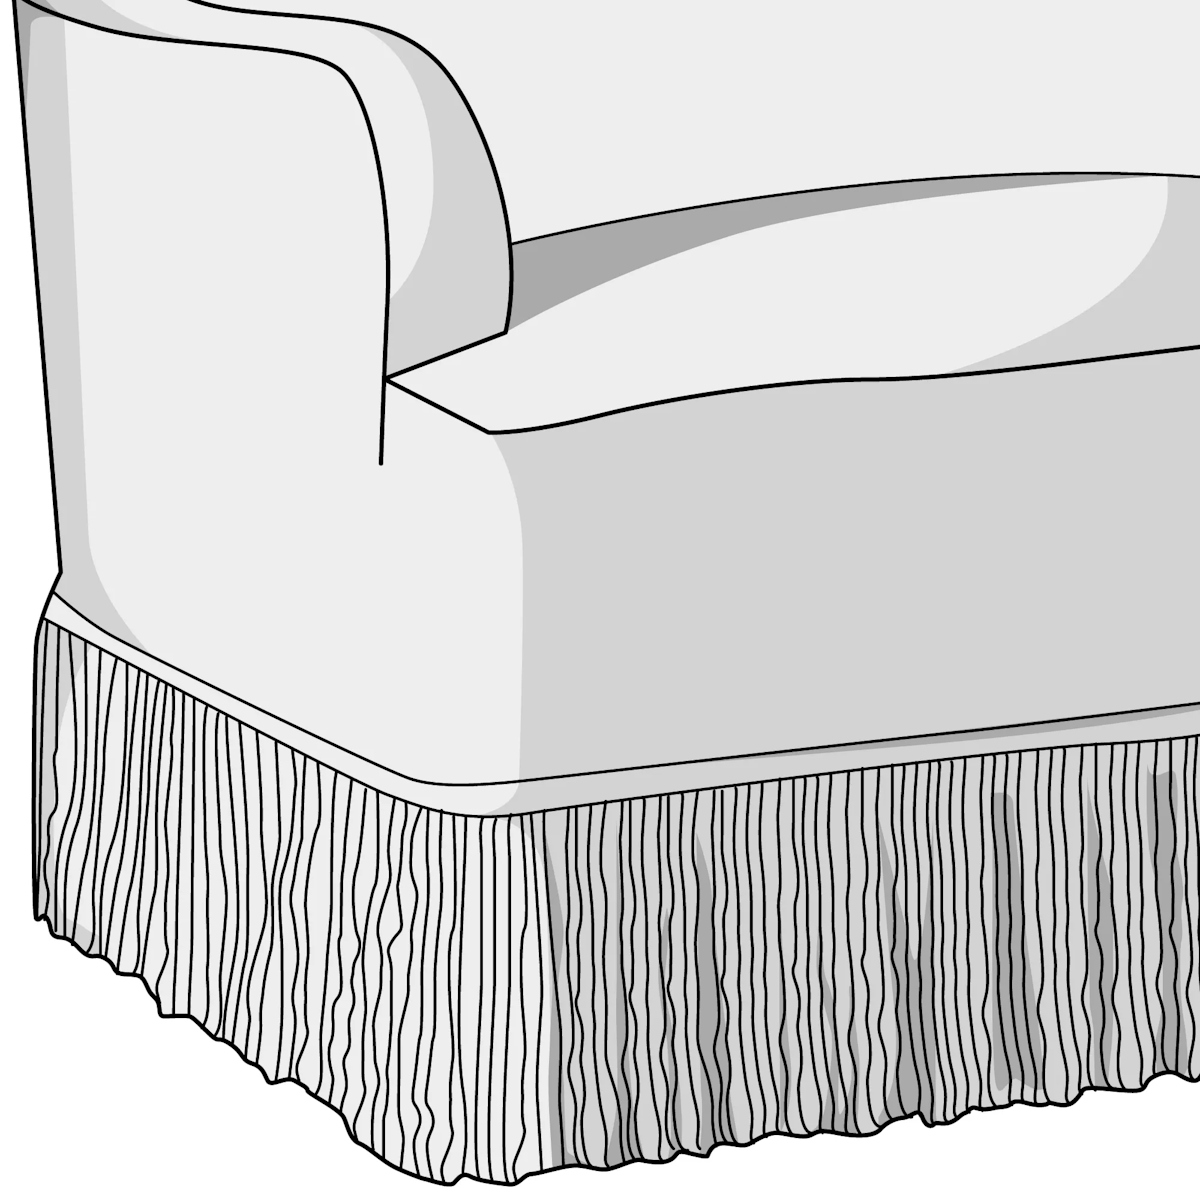 Upholstery illustration of a fringe skirt